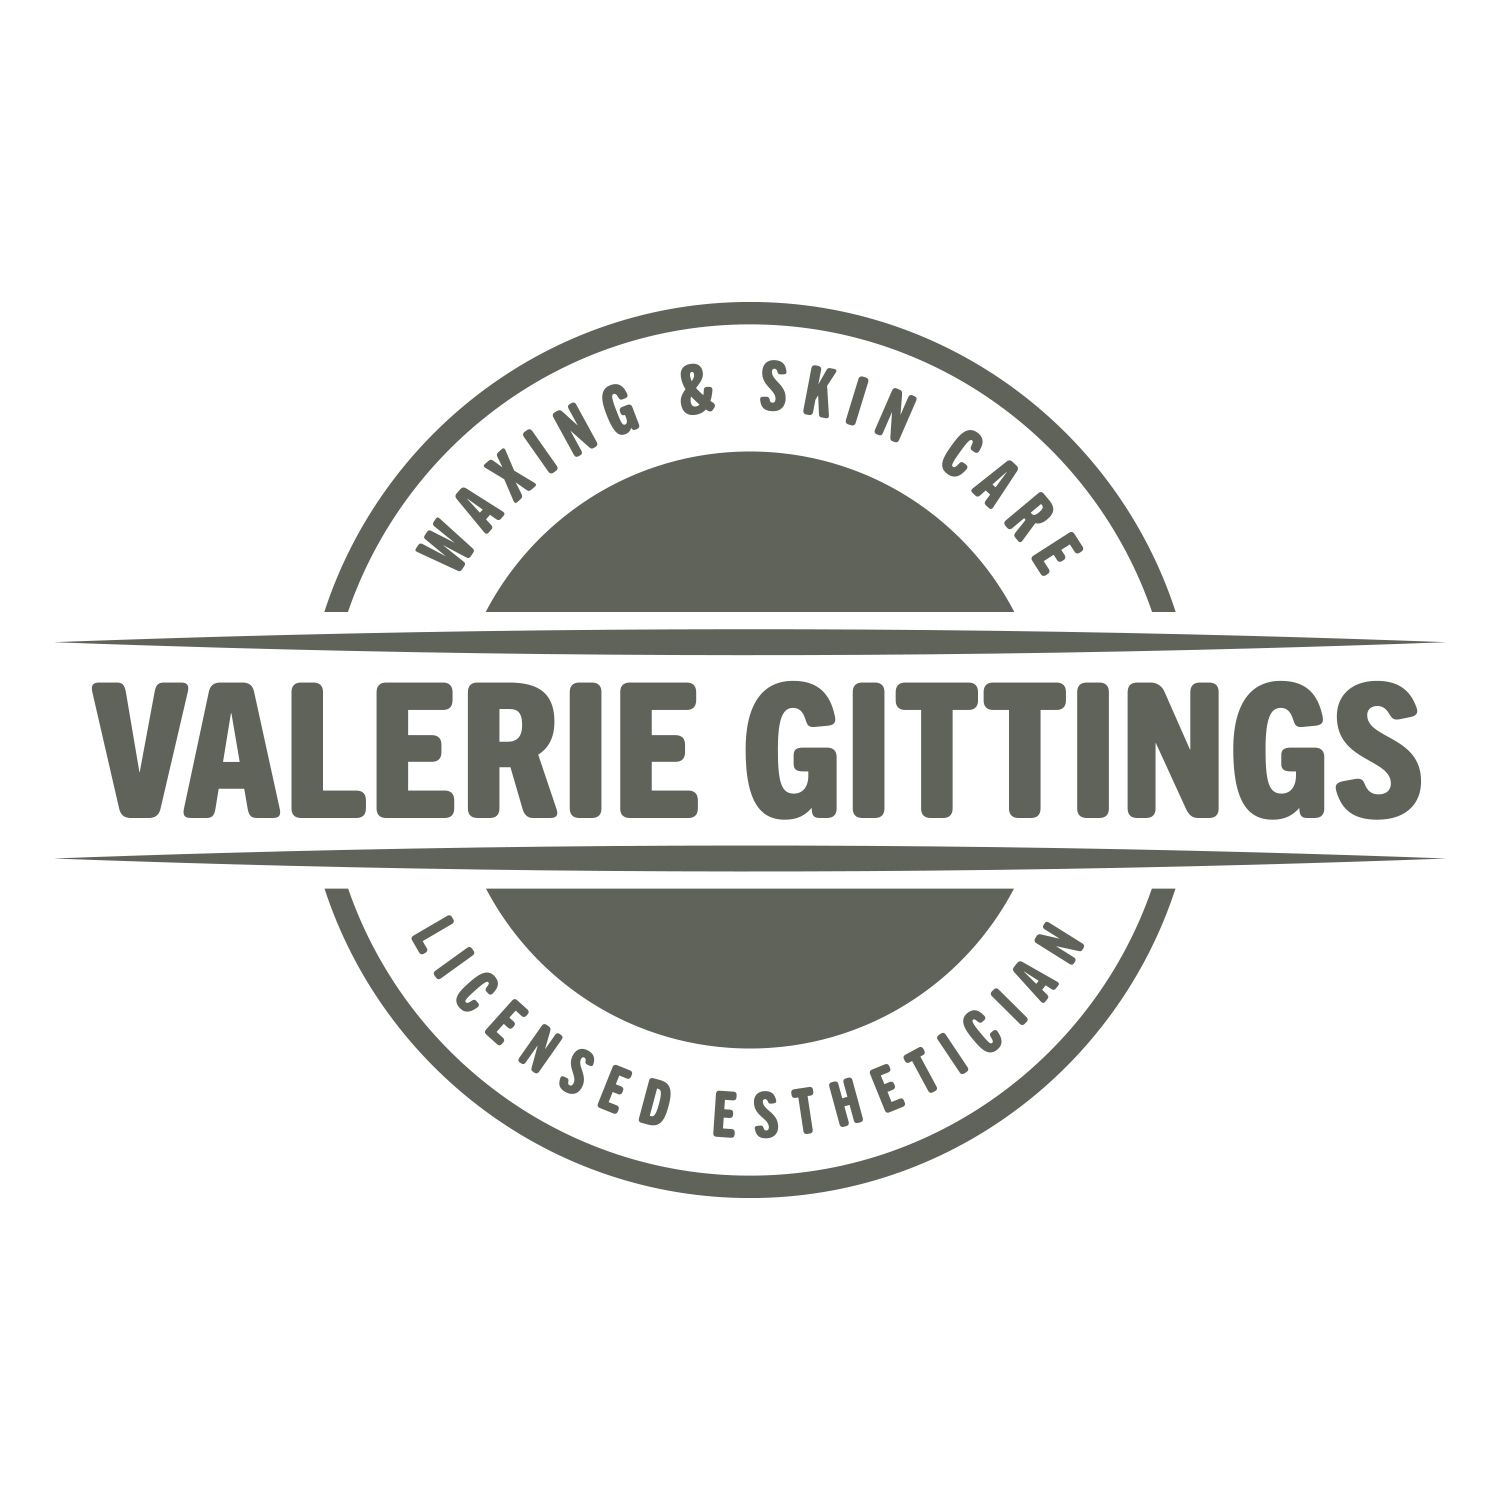 Valerie Gittings LIcensed Esthetician logo